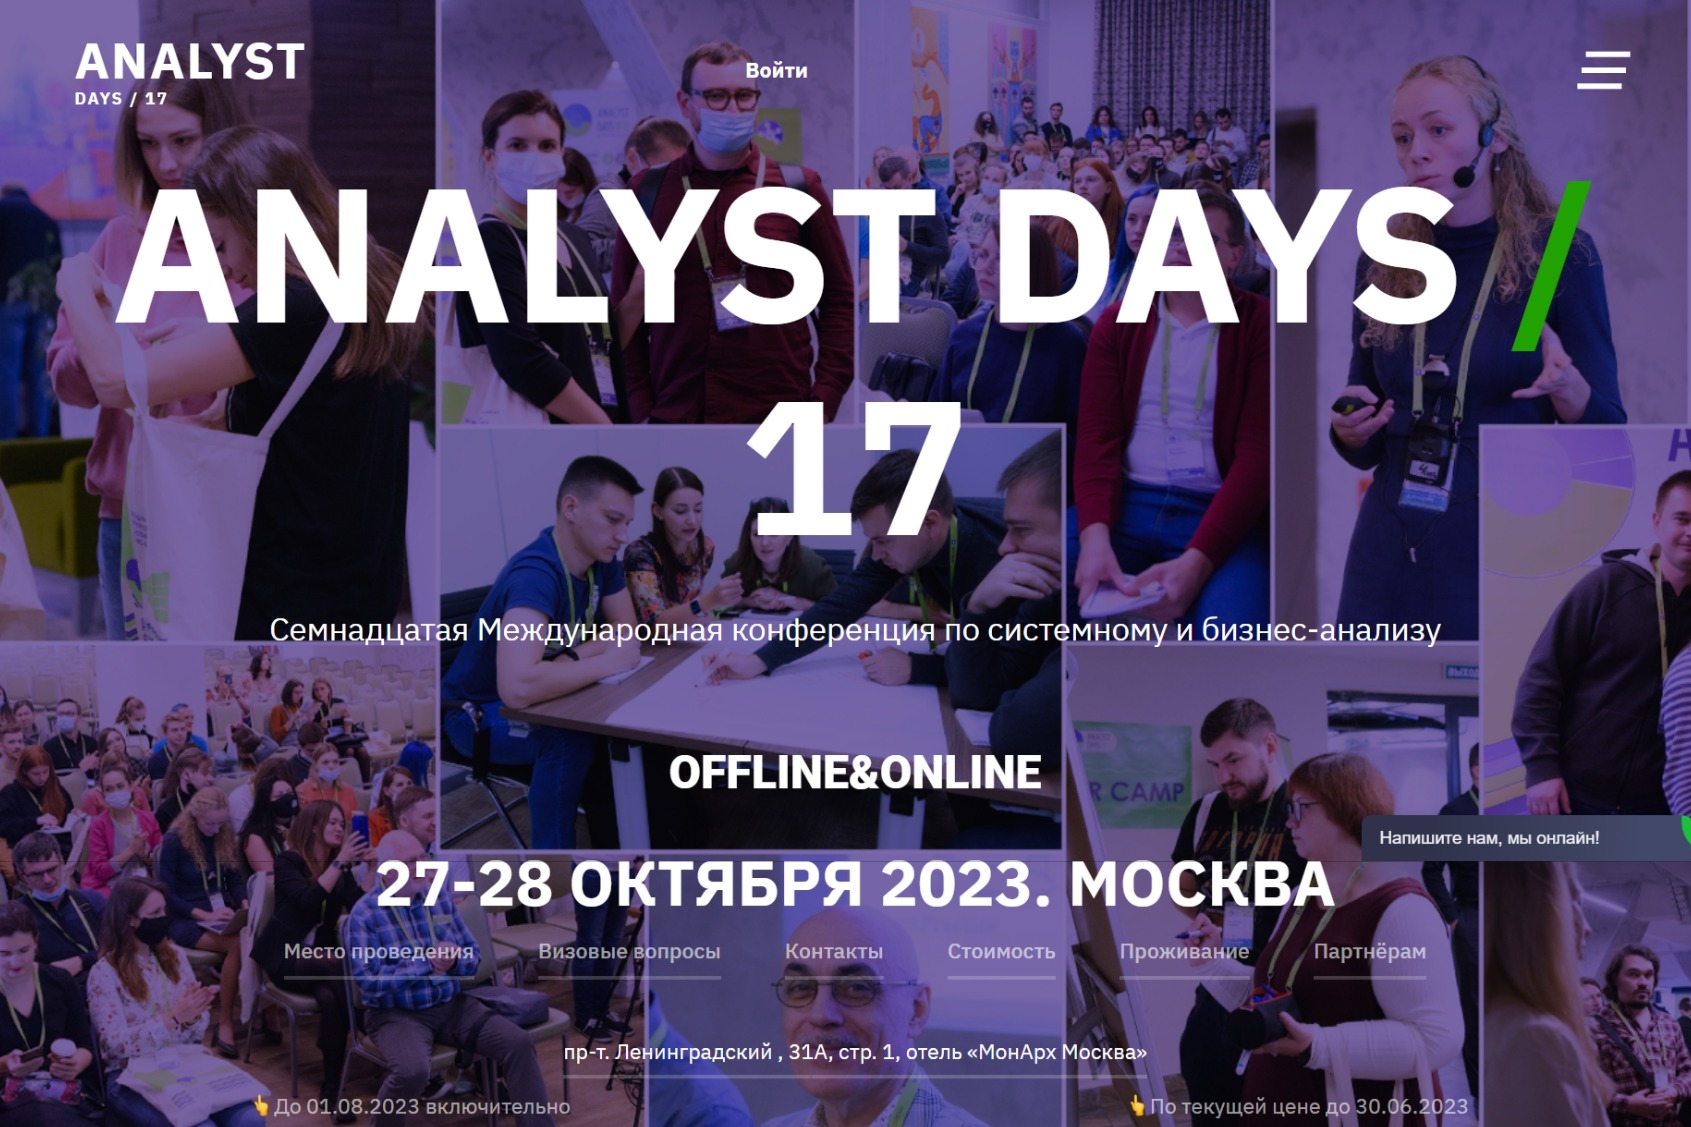 Analyst Days # 17